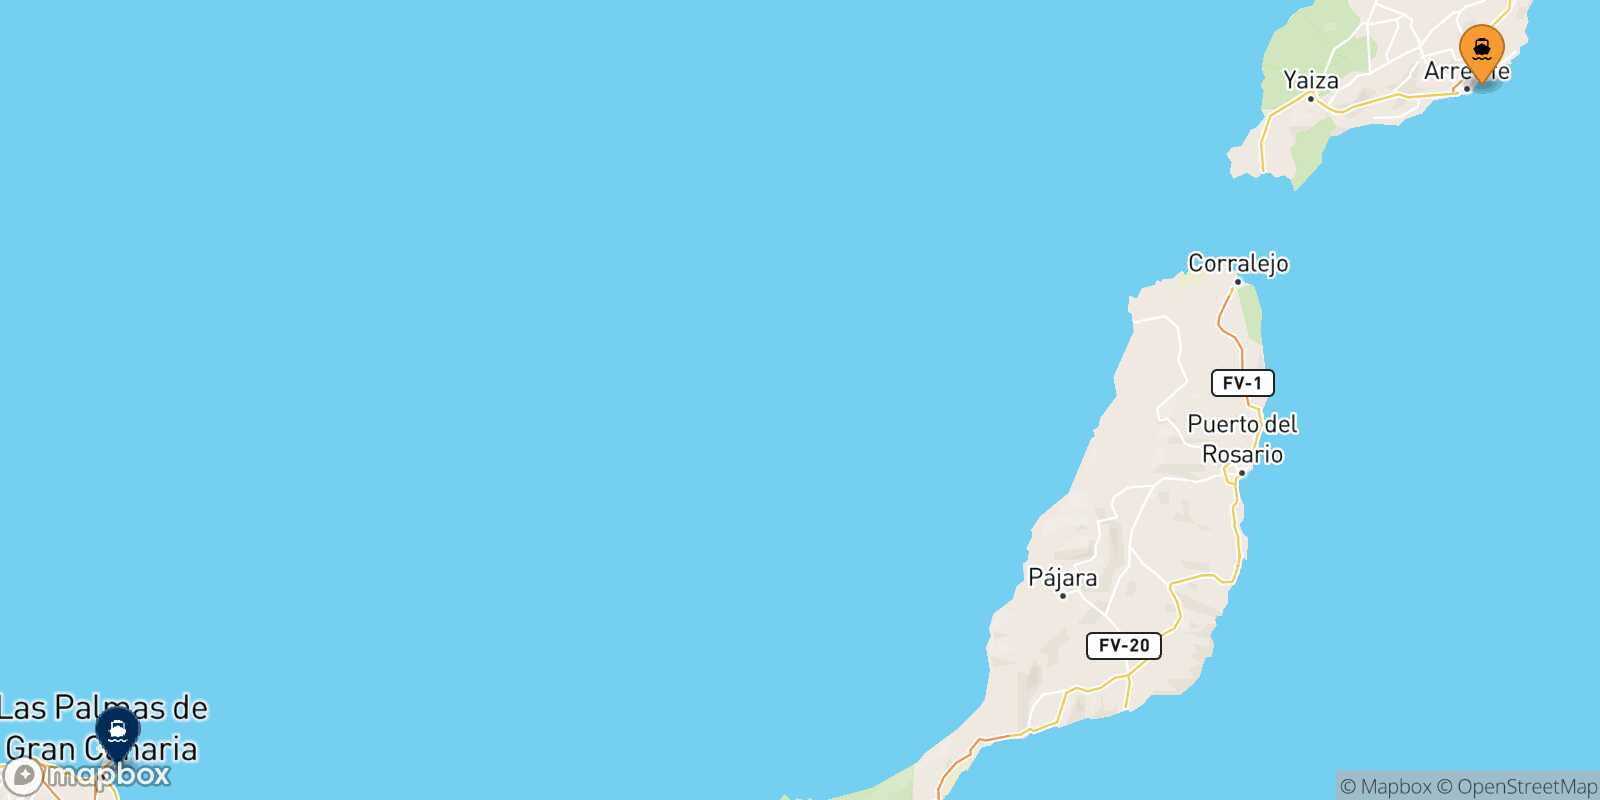 Mapa de la ruta Arrecife (Lanzarote) Las Palmas De Gran Canaria